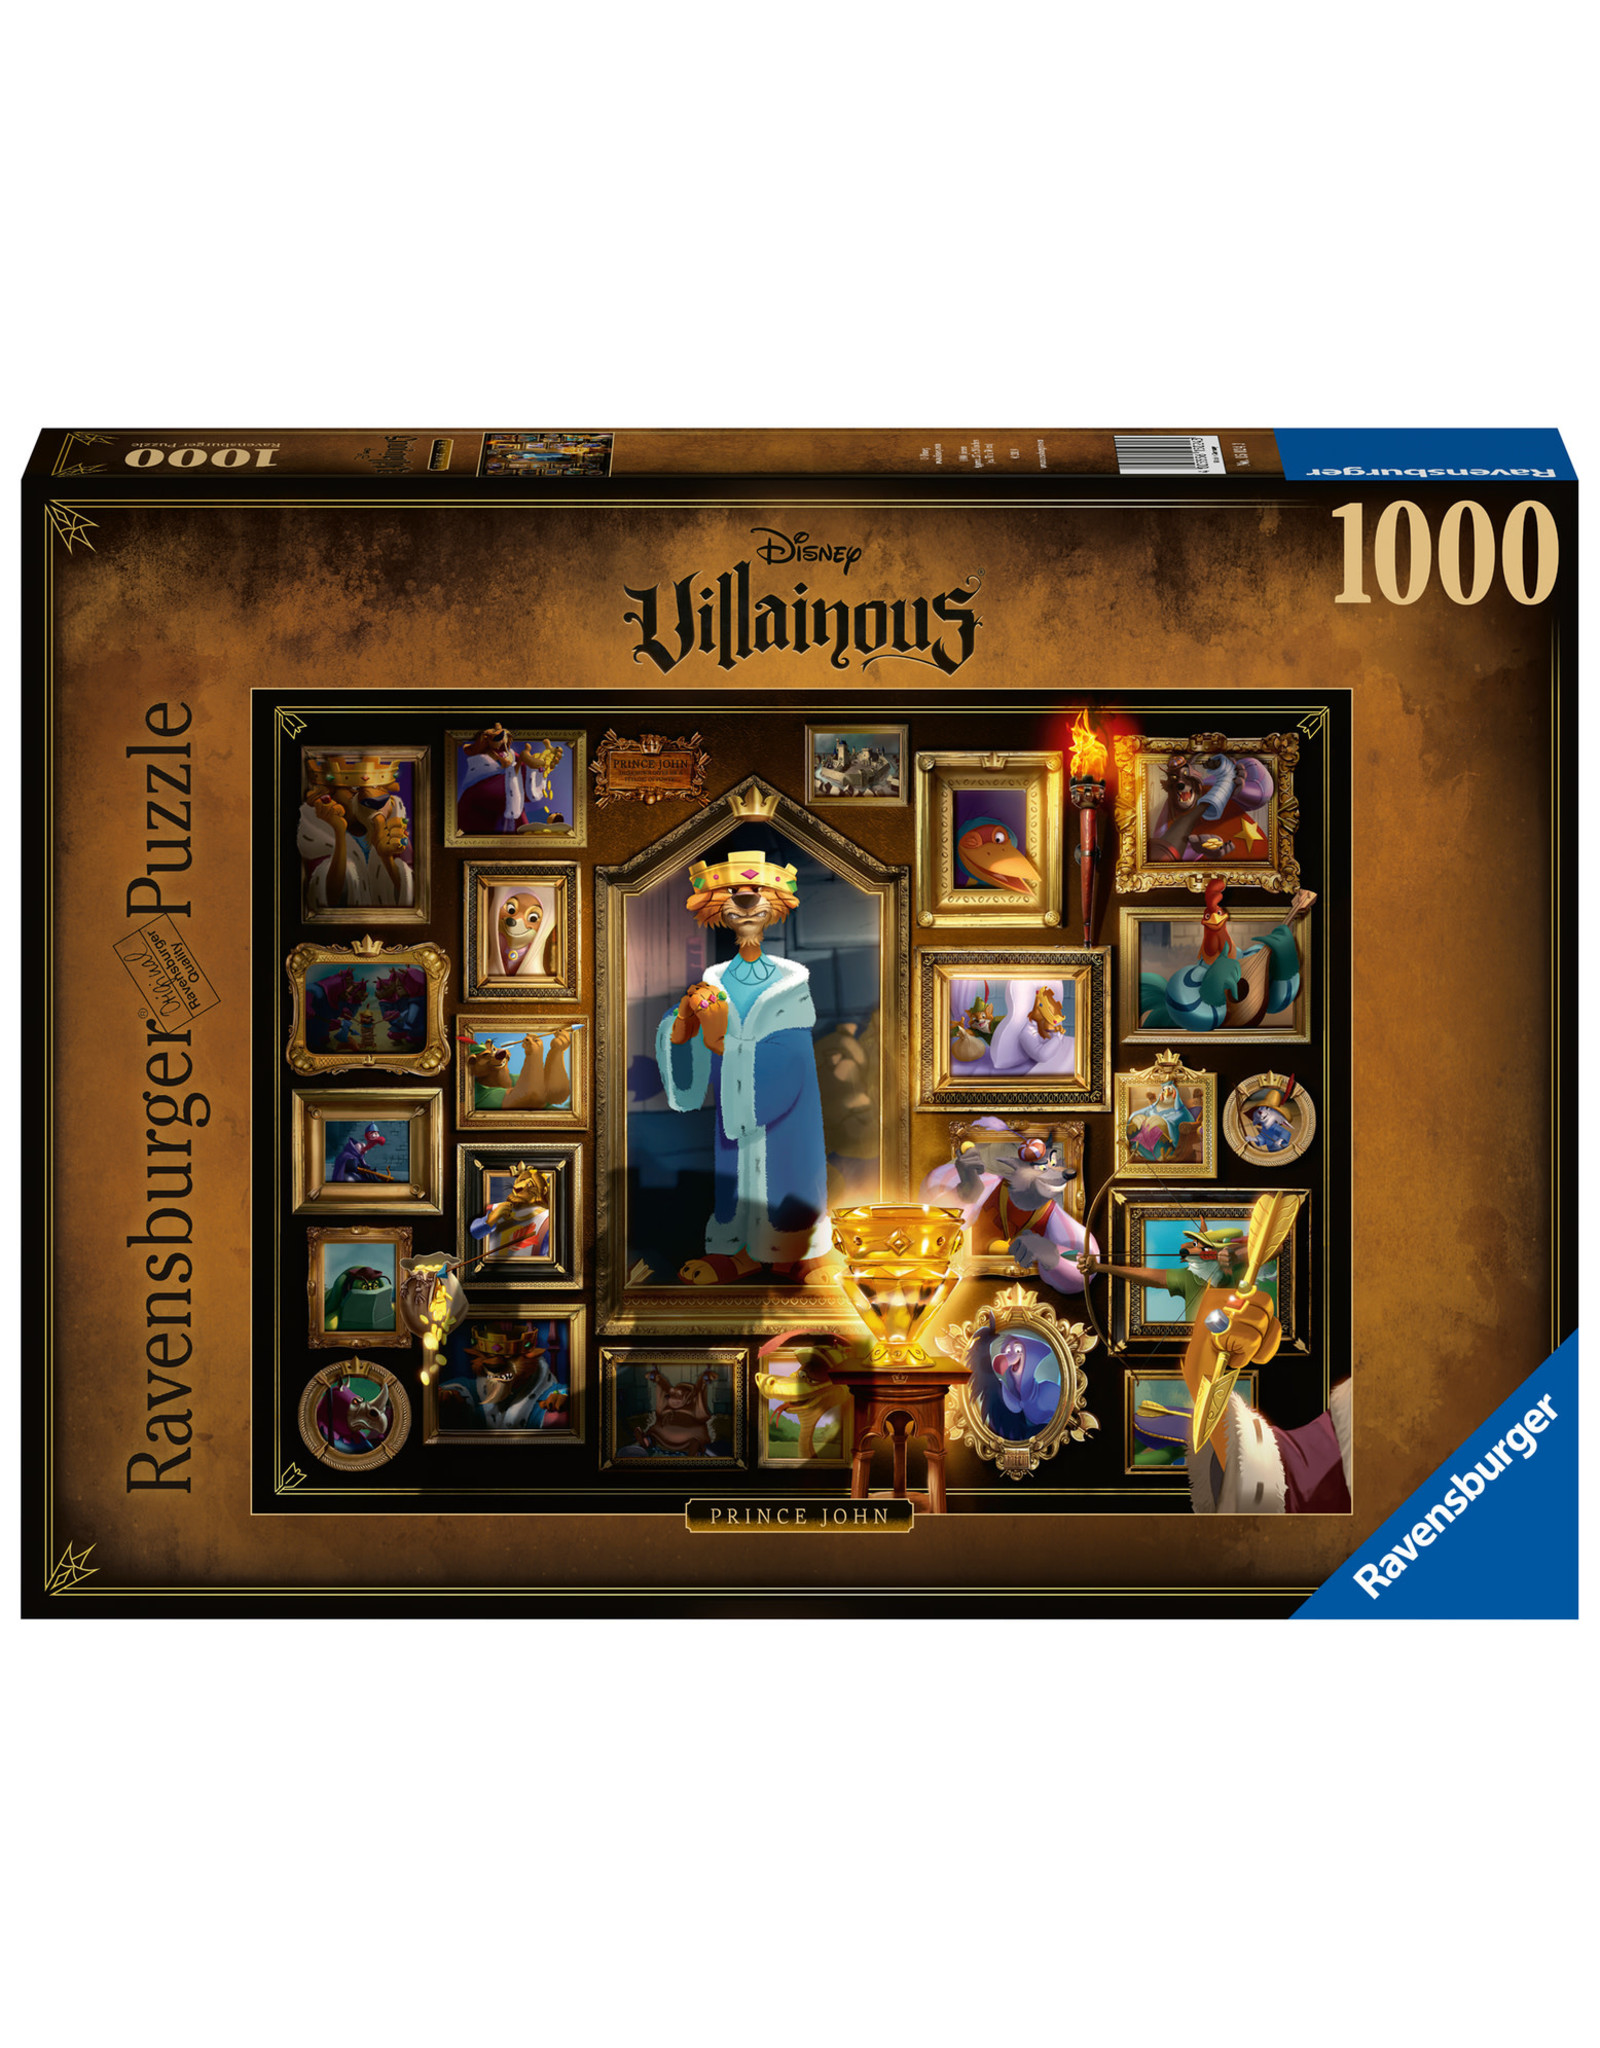 Ravensburger Ravensburger puzzel  150243 Villainous:Prince John 1000 stukjes